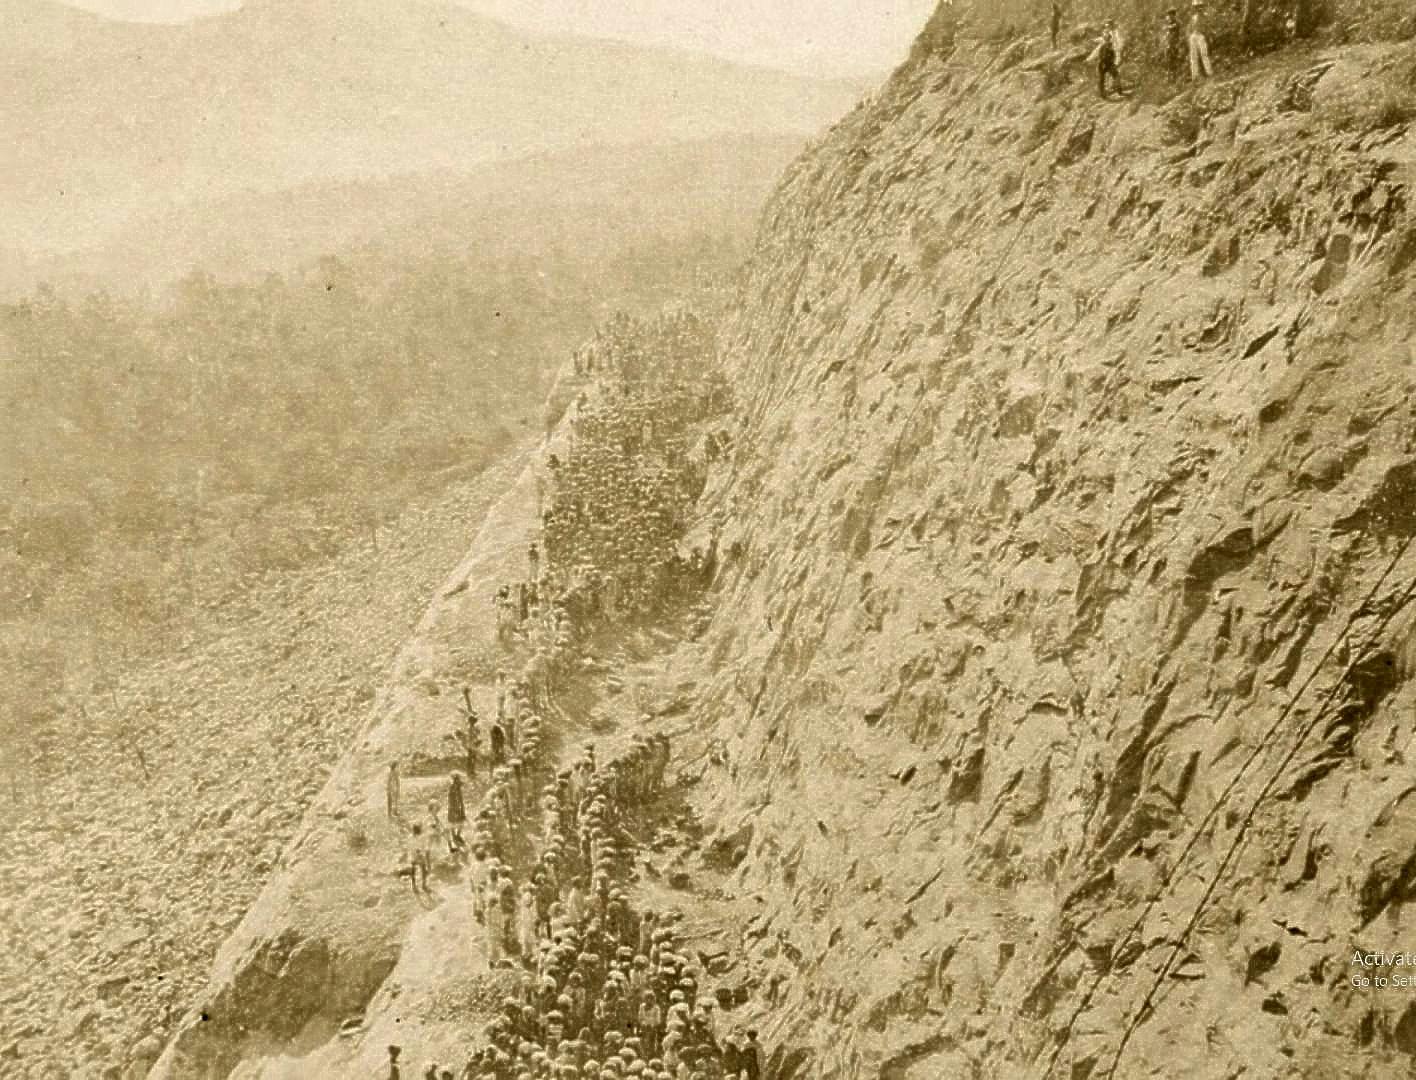 Men working on steep cliffs